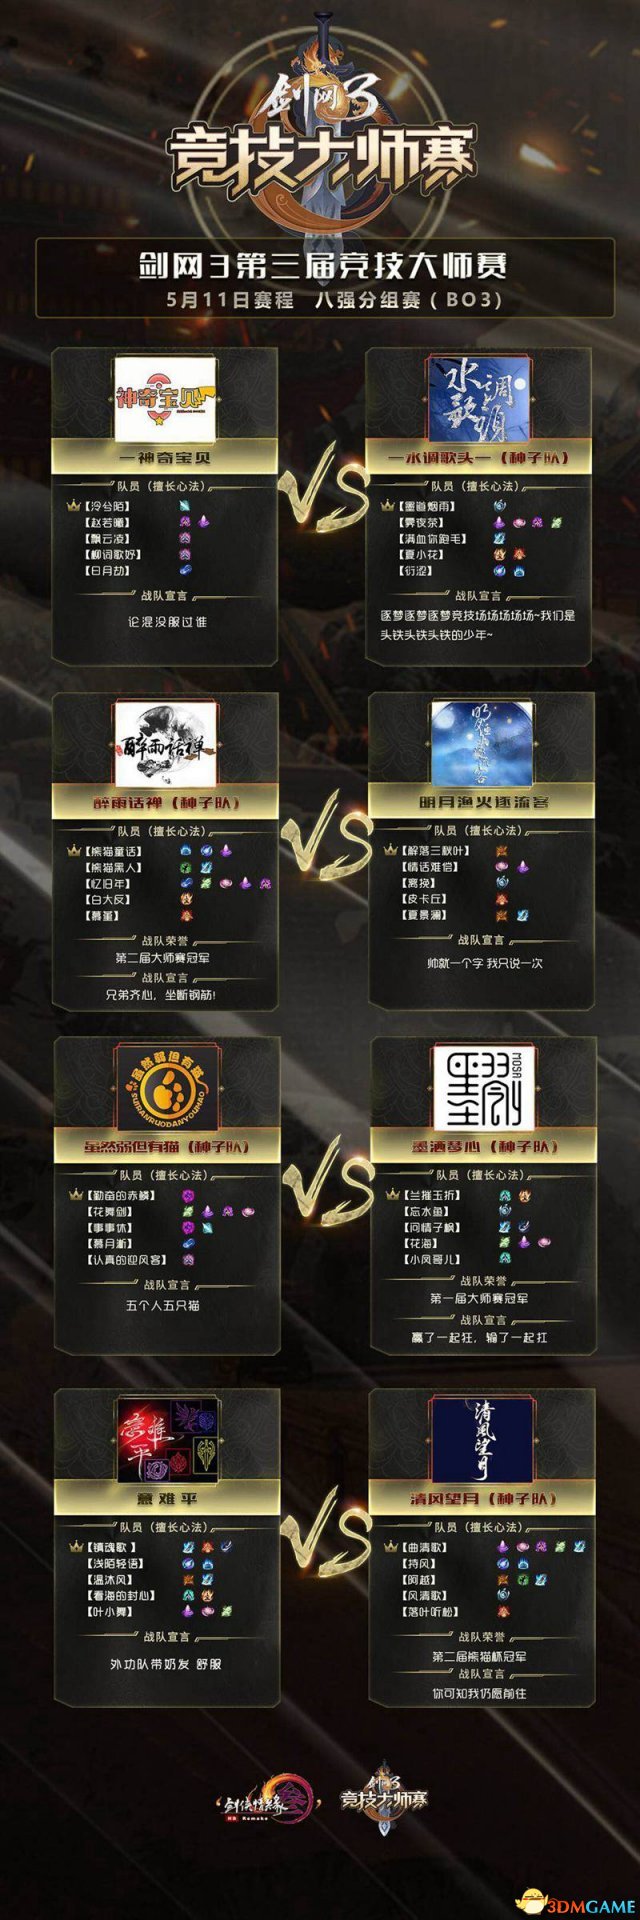 劍鳴九州 《劍網3》大師賽上海總決賽今日15點開戰